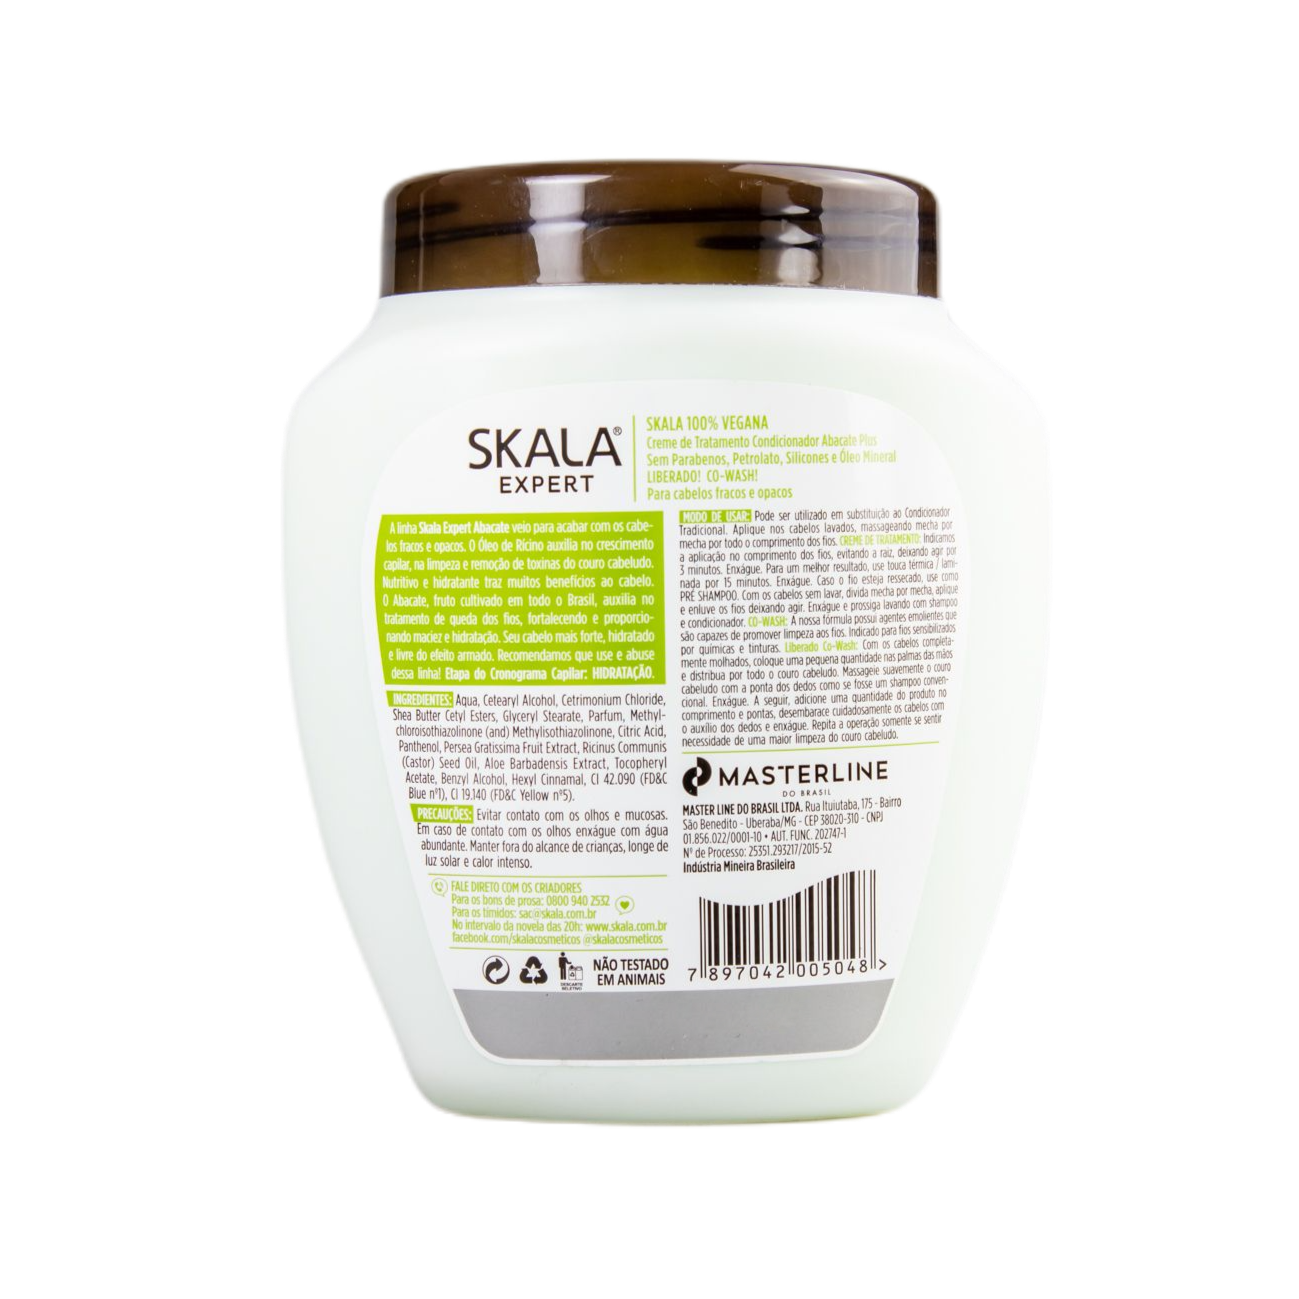 Skala Treatment Cream Creme De Tratamento Abacate / Treatment Cream Avocado - Skala